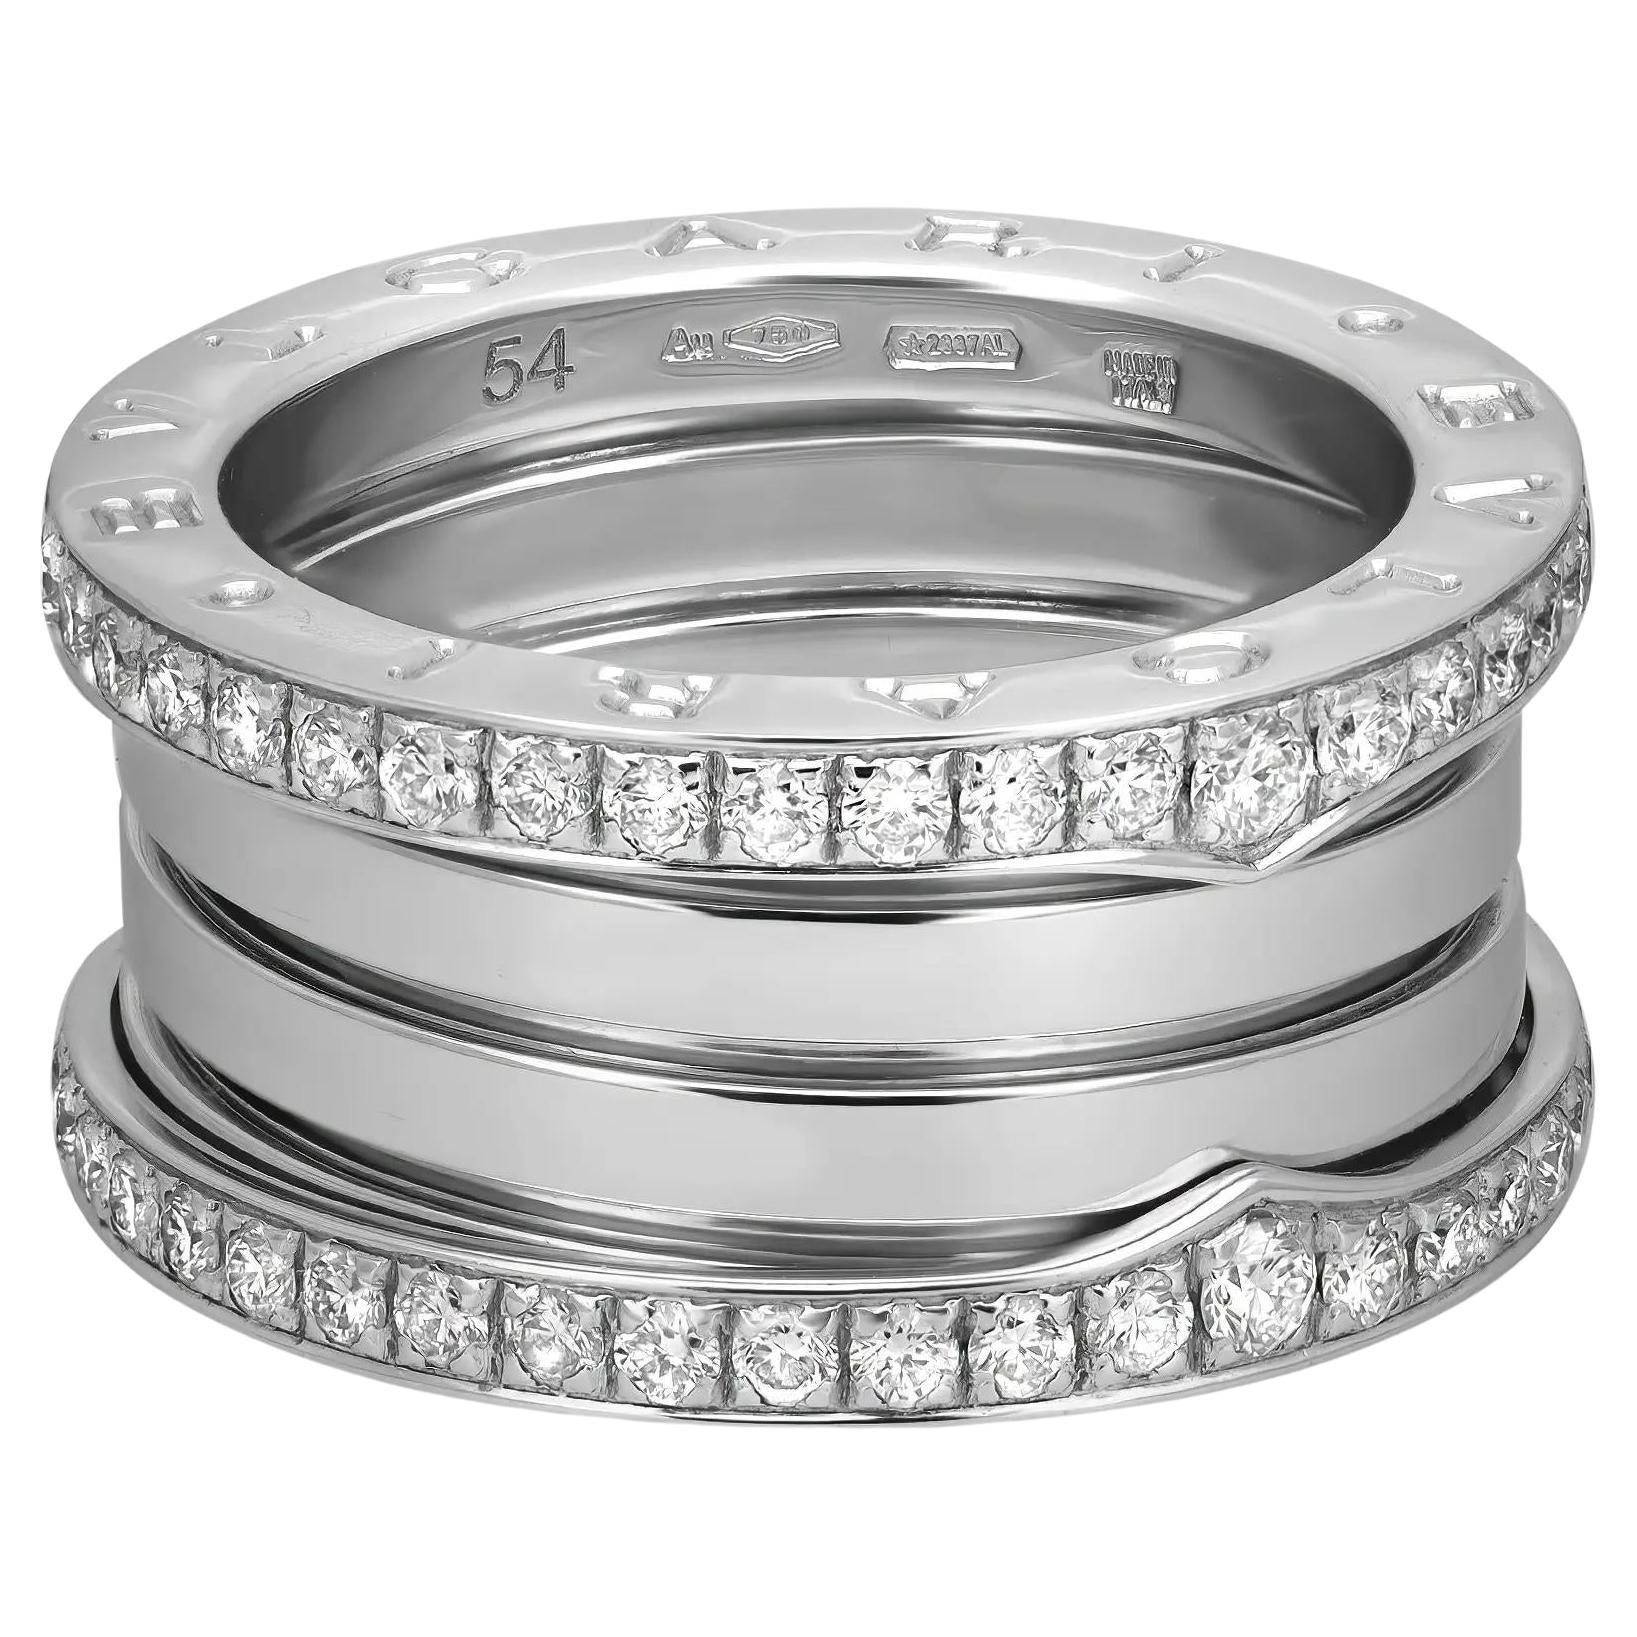 Bvlgari B.Zero1 Diamond Four Band Ring 18K White Gold Size 54 US 6.75 For Sale